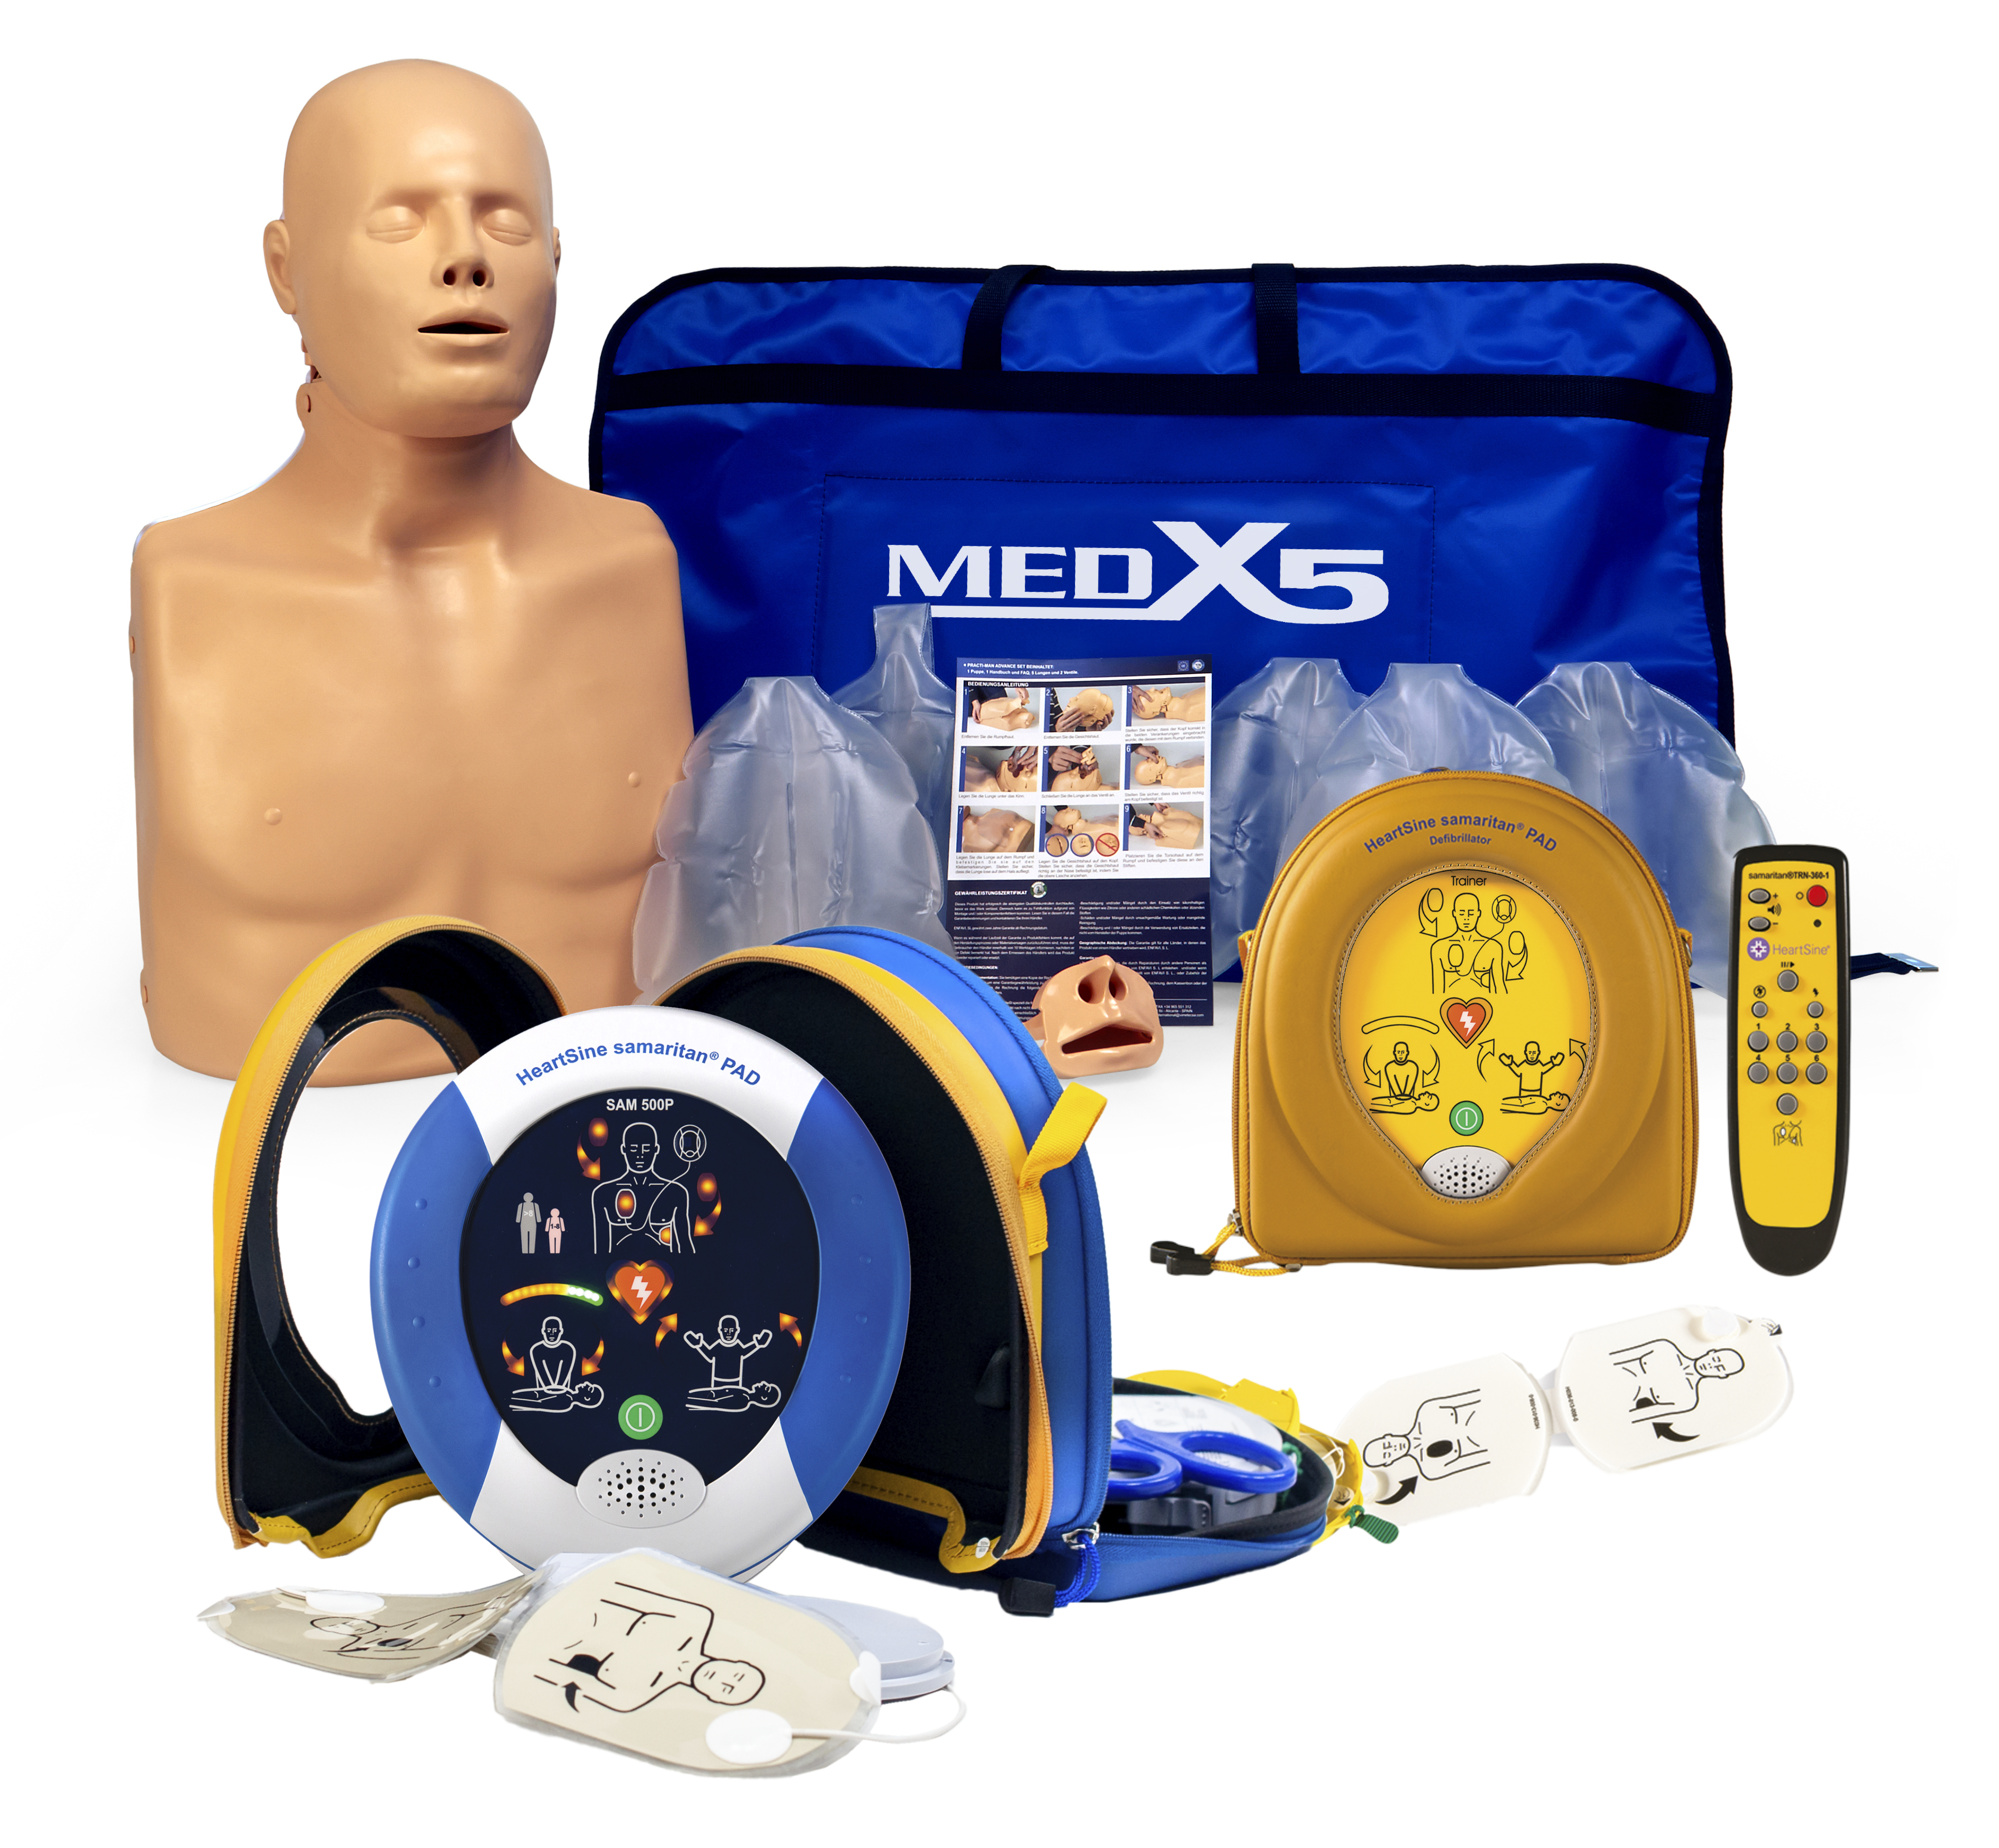 HeartSine SAM 500P Defibrillator, PAD500 Trainer und 2 in 1 Übungspuppe